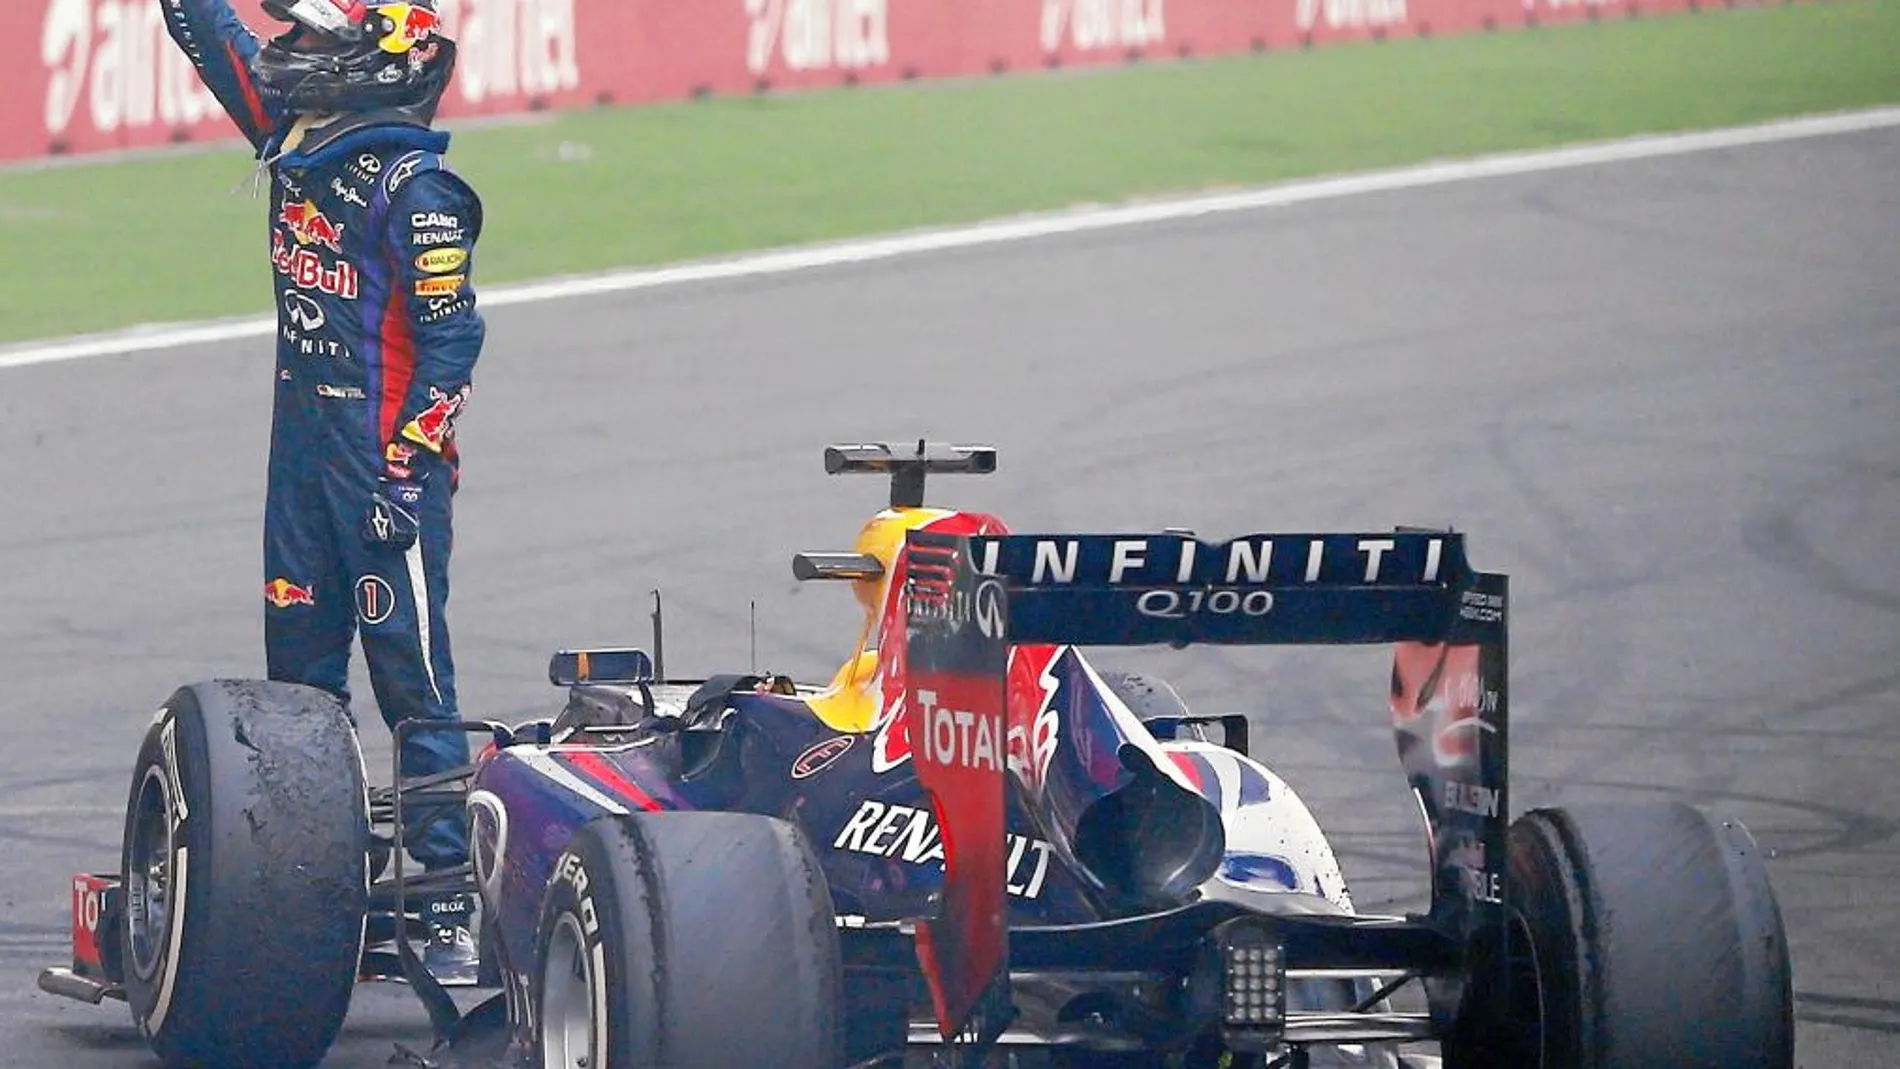 El de Red Bull celebró en la recta su victoria, algo que le costó una multa. Foto: Efe/Red Bull